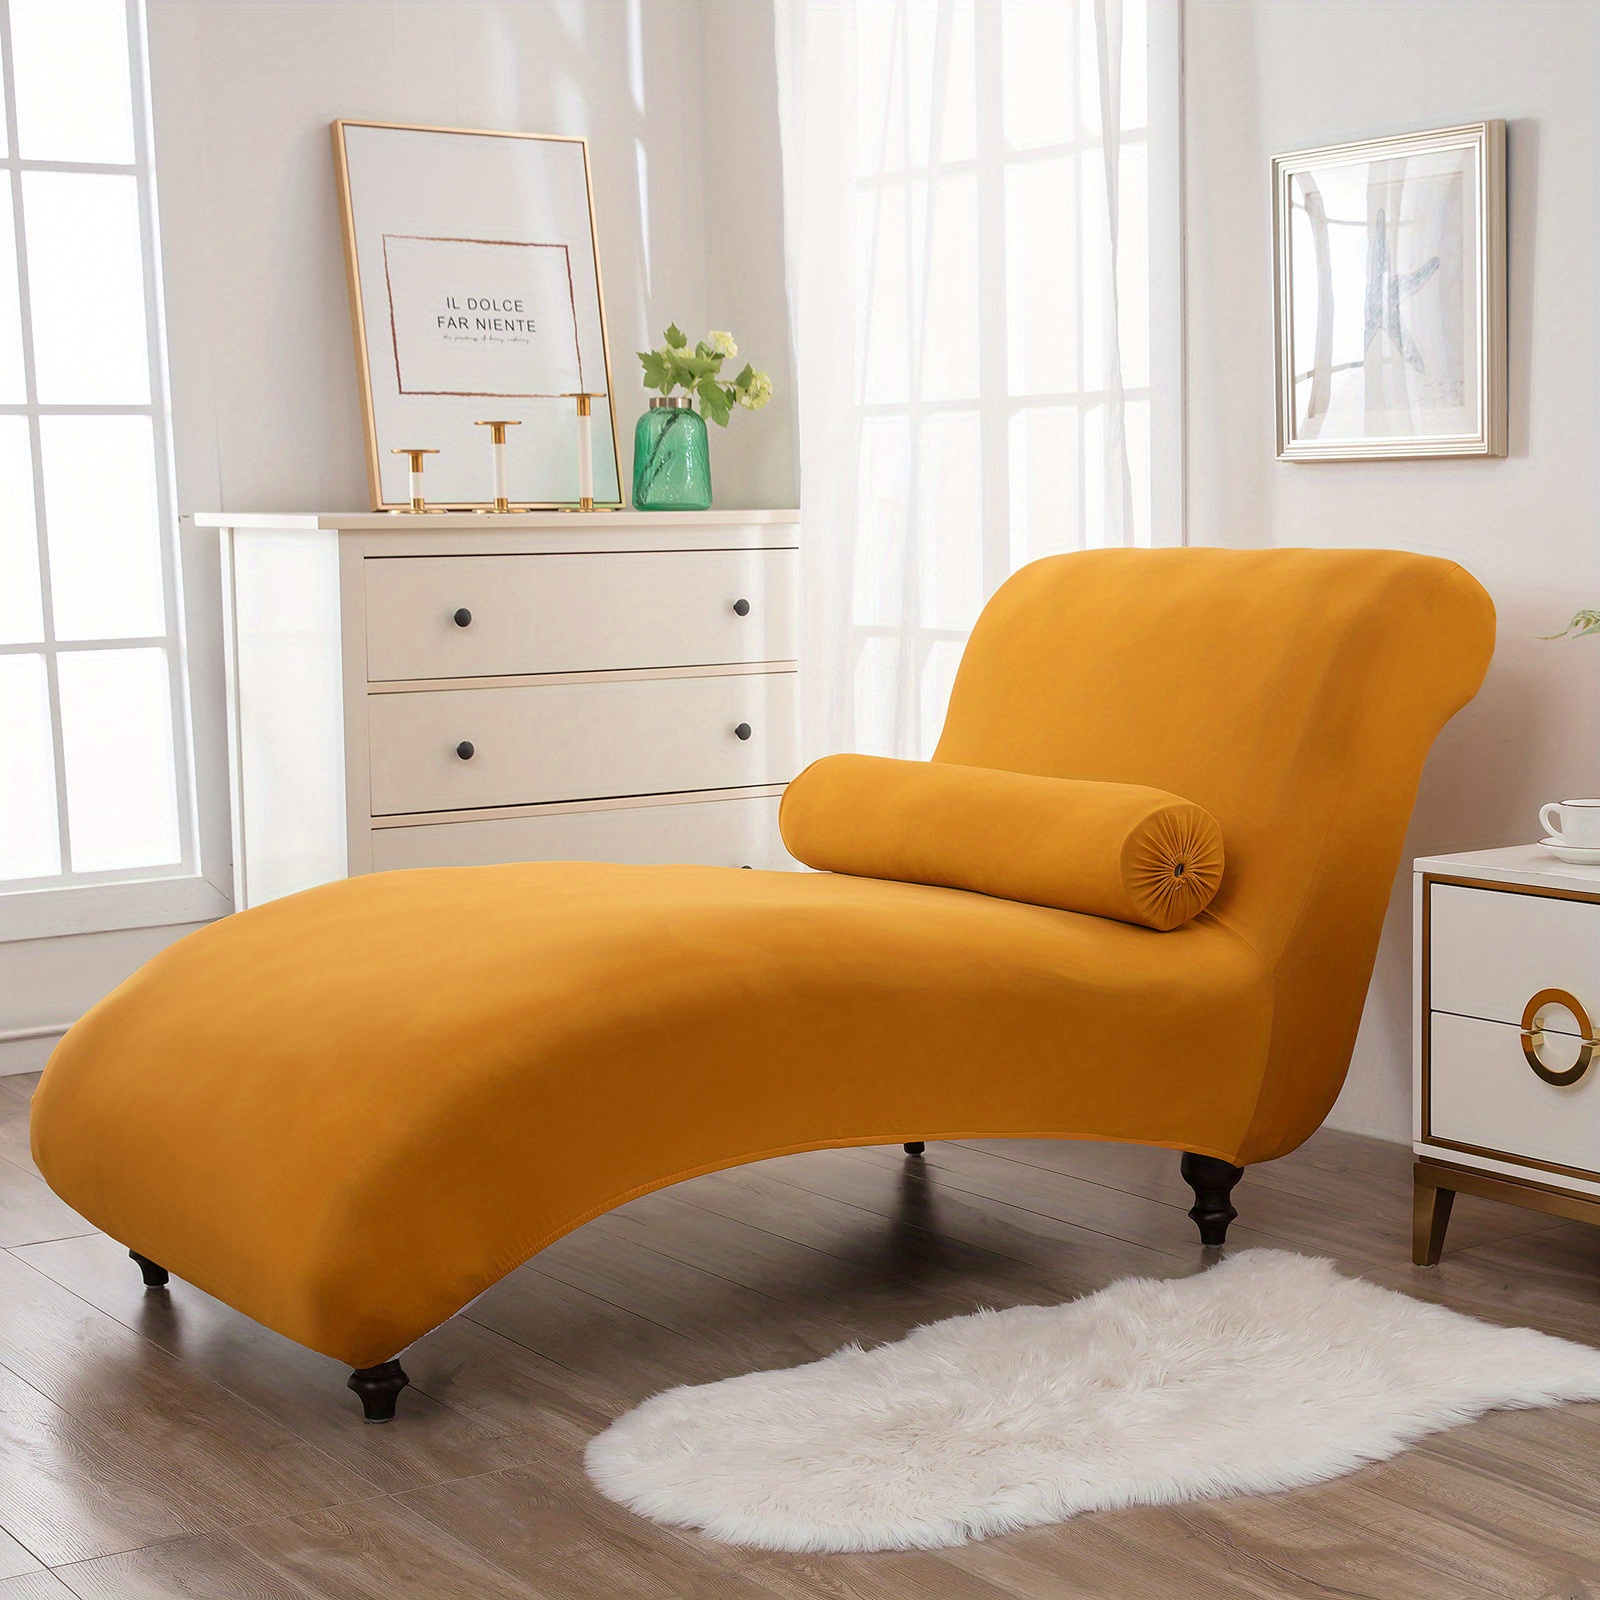  SLOUD Funda de sofá cama de cachemira de visón dorado, funda de  futón sin brazos, tela elástica para sofá sin brazos, color morado, 47-55  pulgadas : Hogar y Cocina